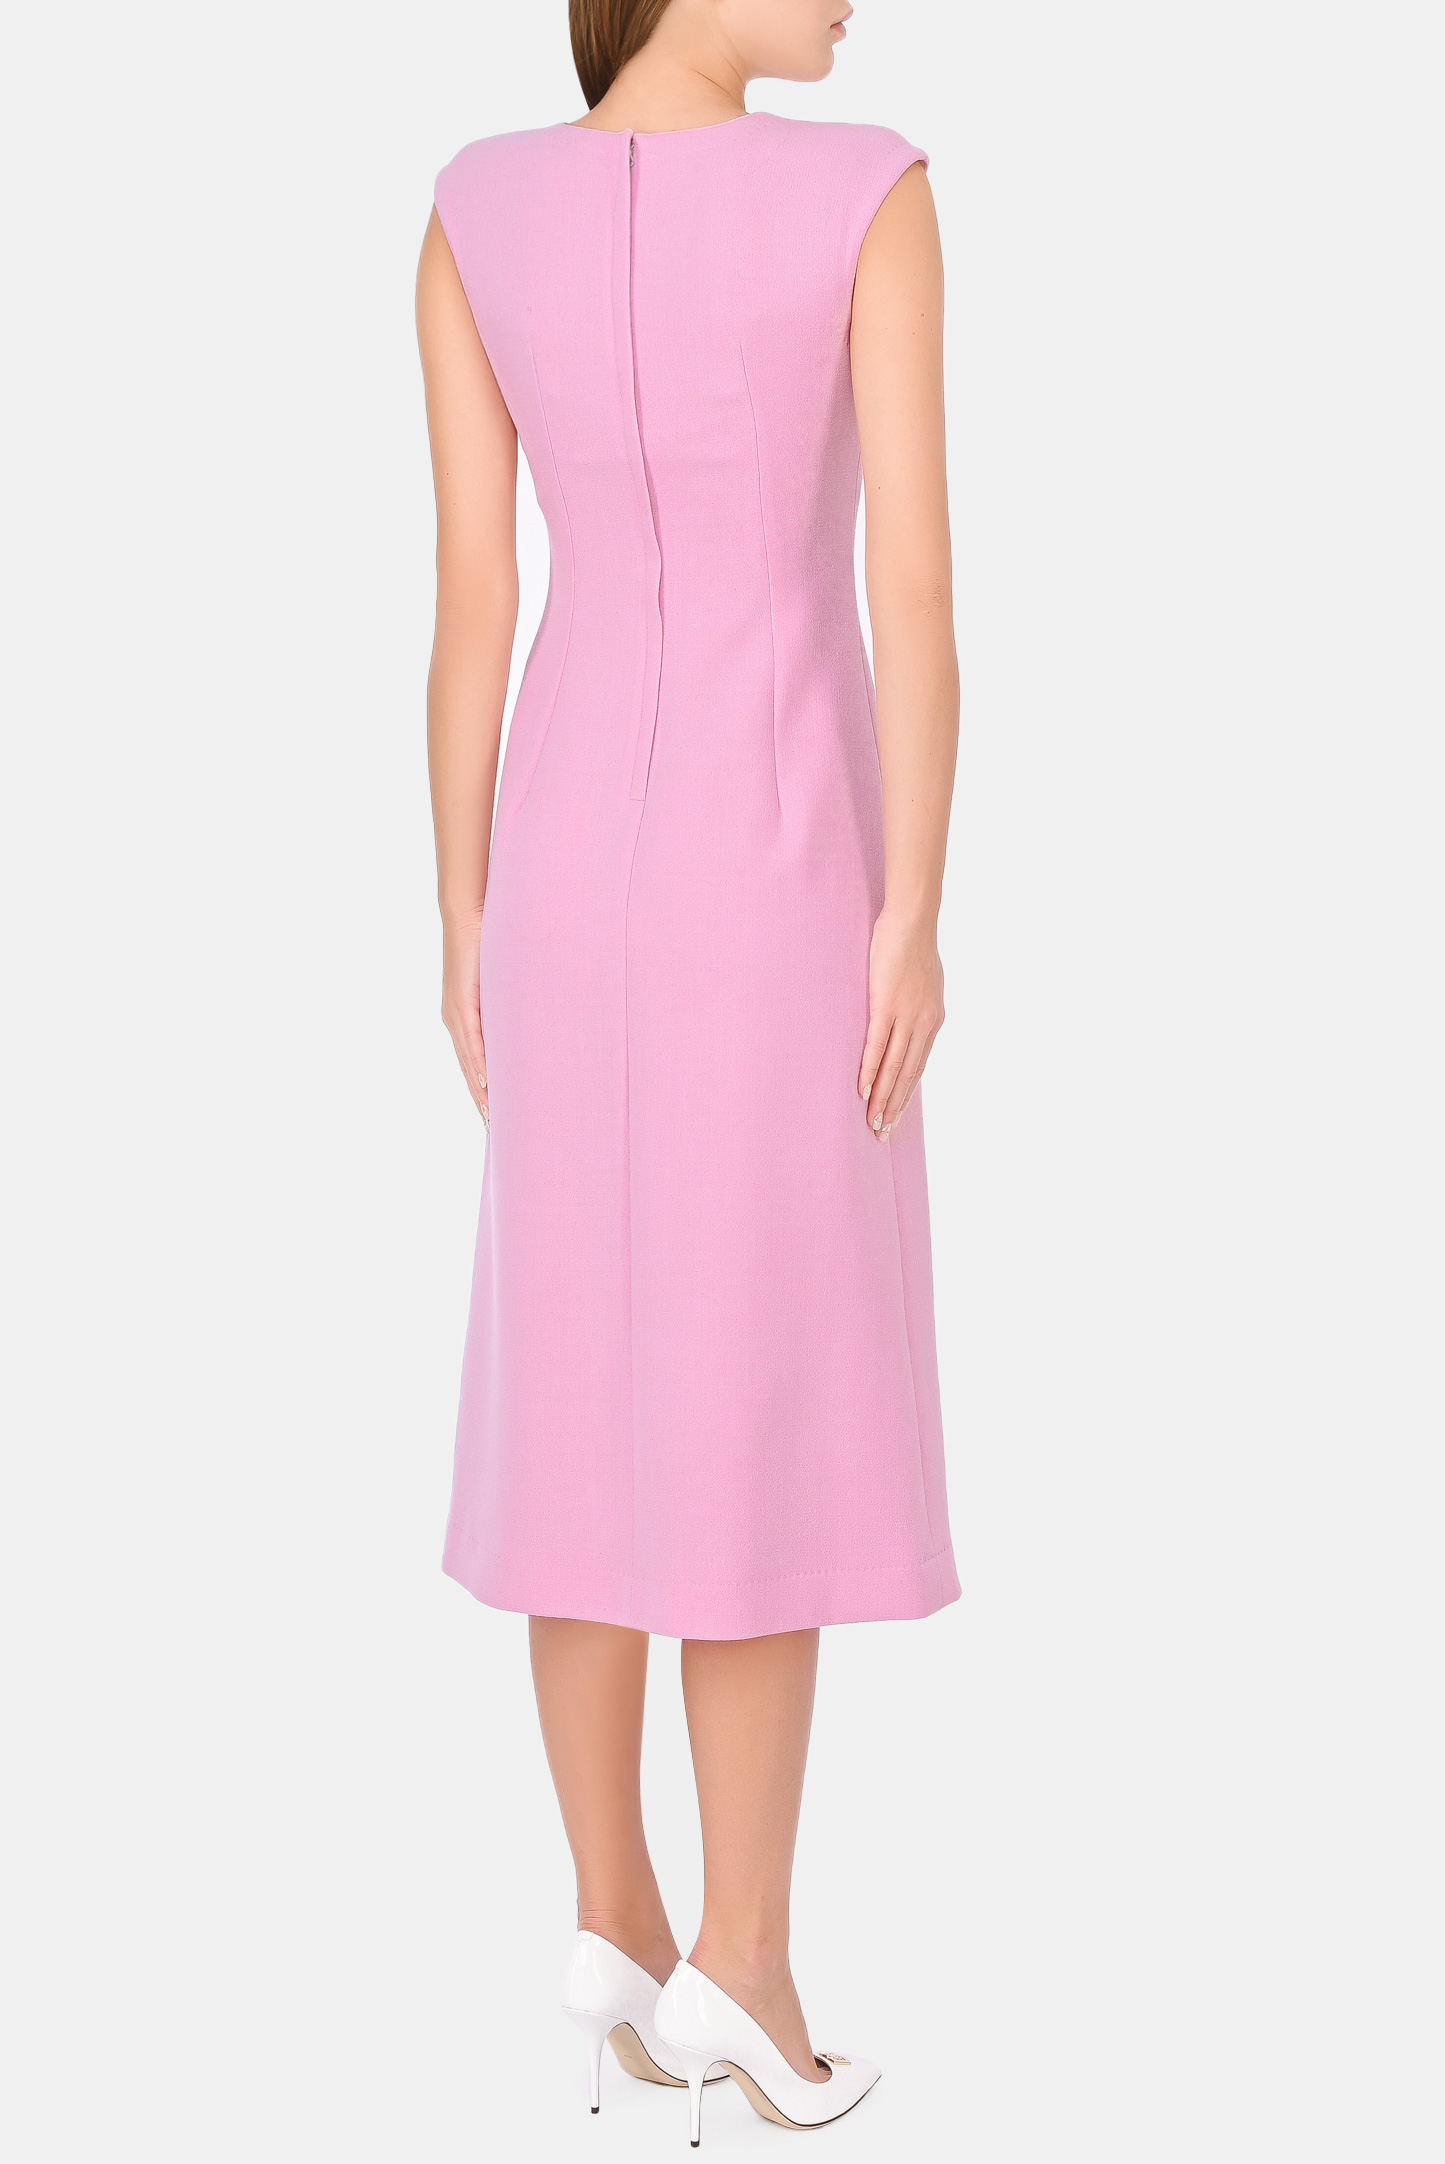 Платье DOLCE & GABBANA F6Q1ZT FU2TZ, цвет: Розовый, Женский